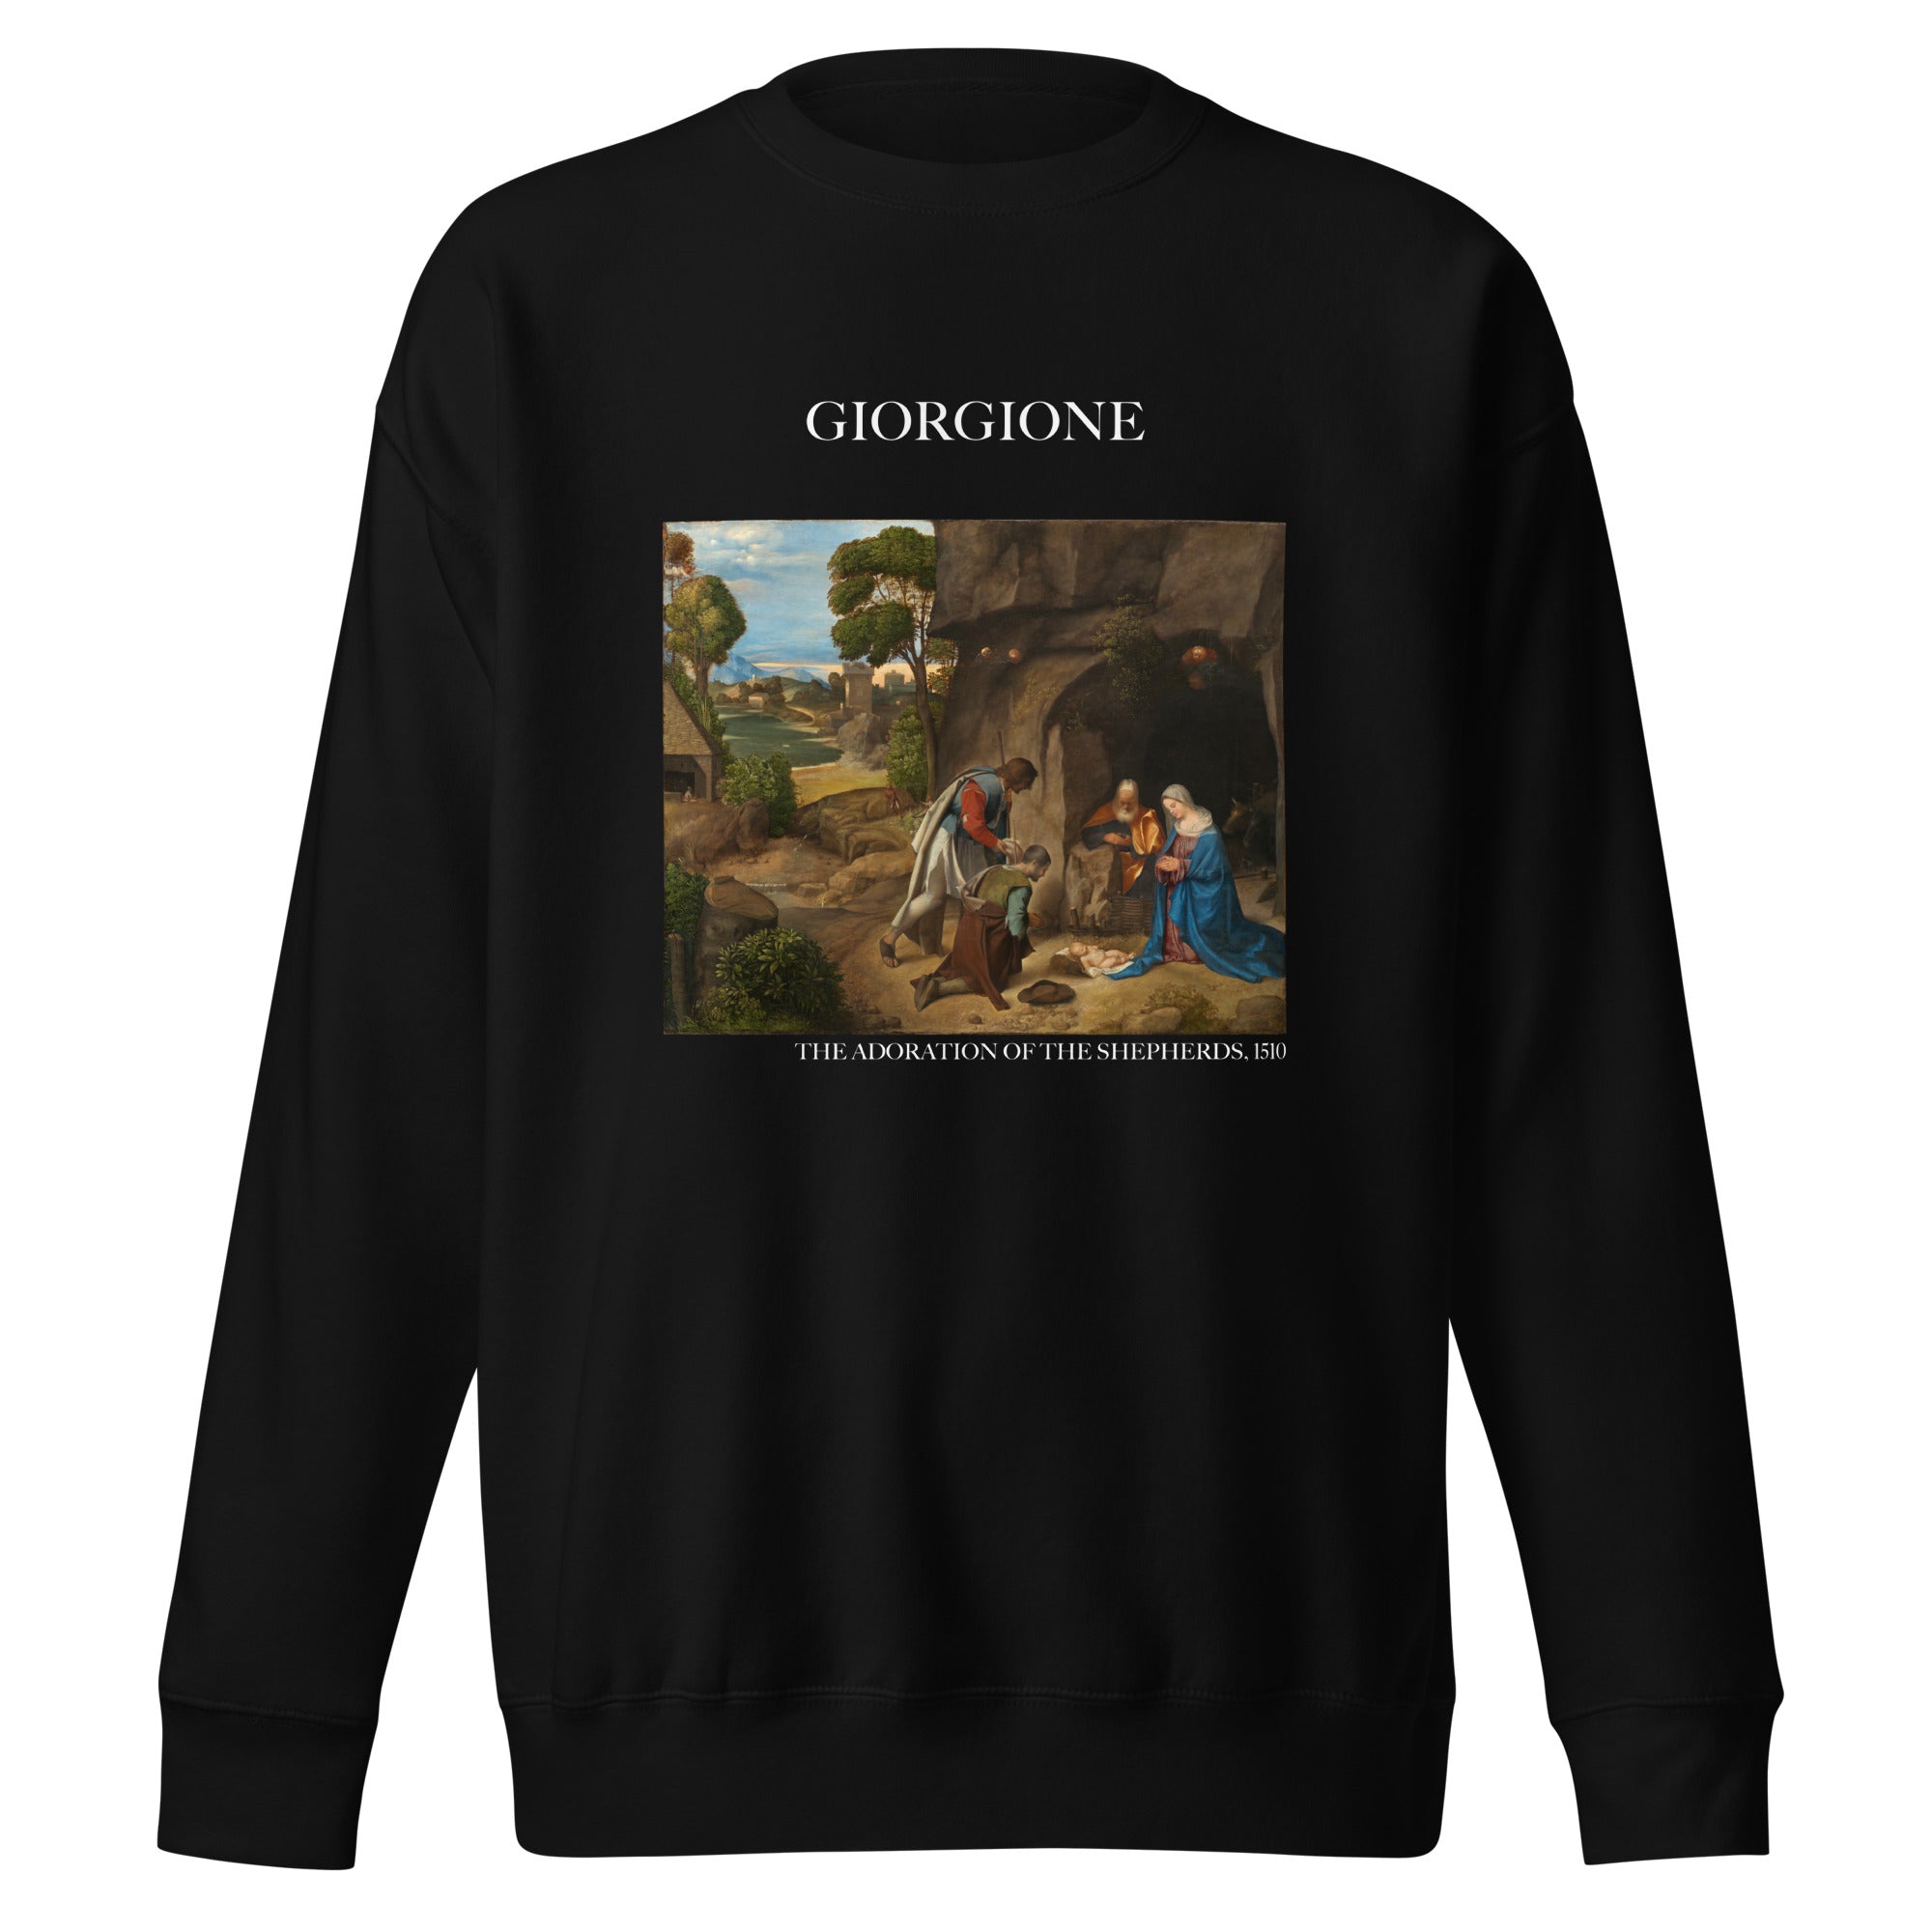 Giorgione - Sweatshirt mit berühmtem Gemälde „Die Anbetung der Hirten“ | Premium-Unisex-Sweatshirt